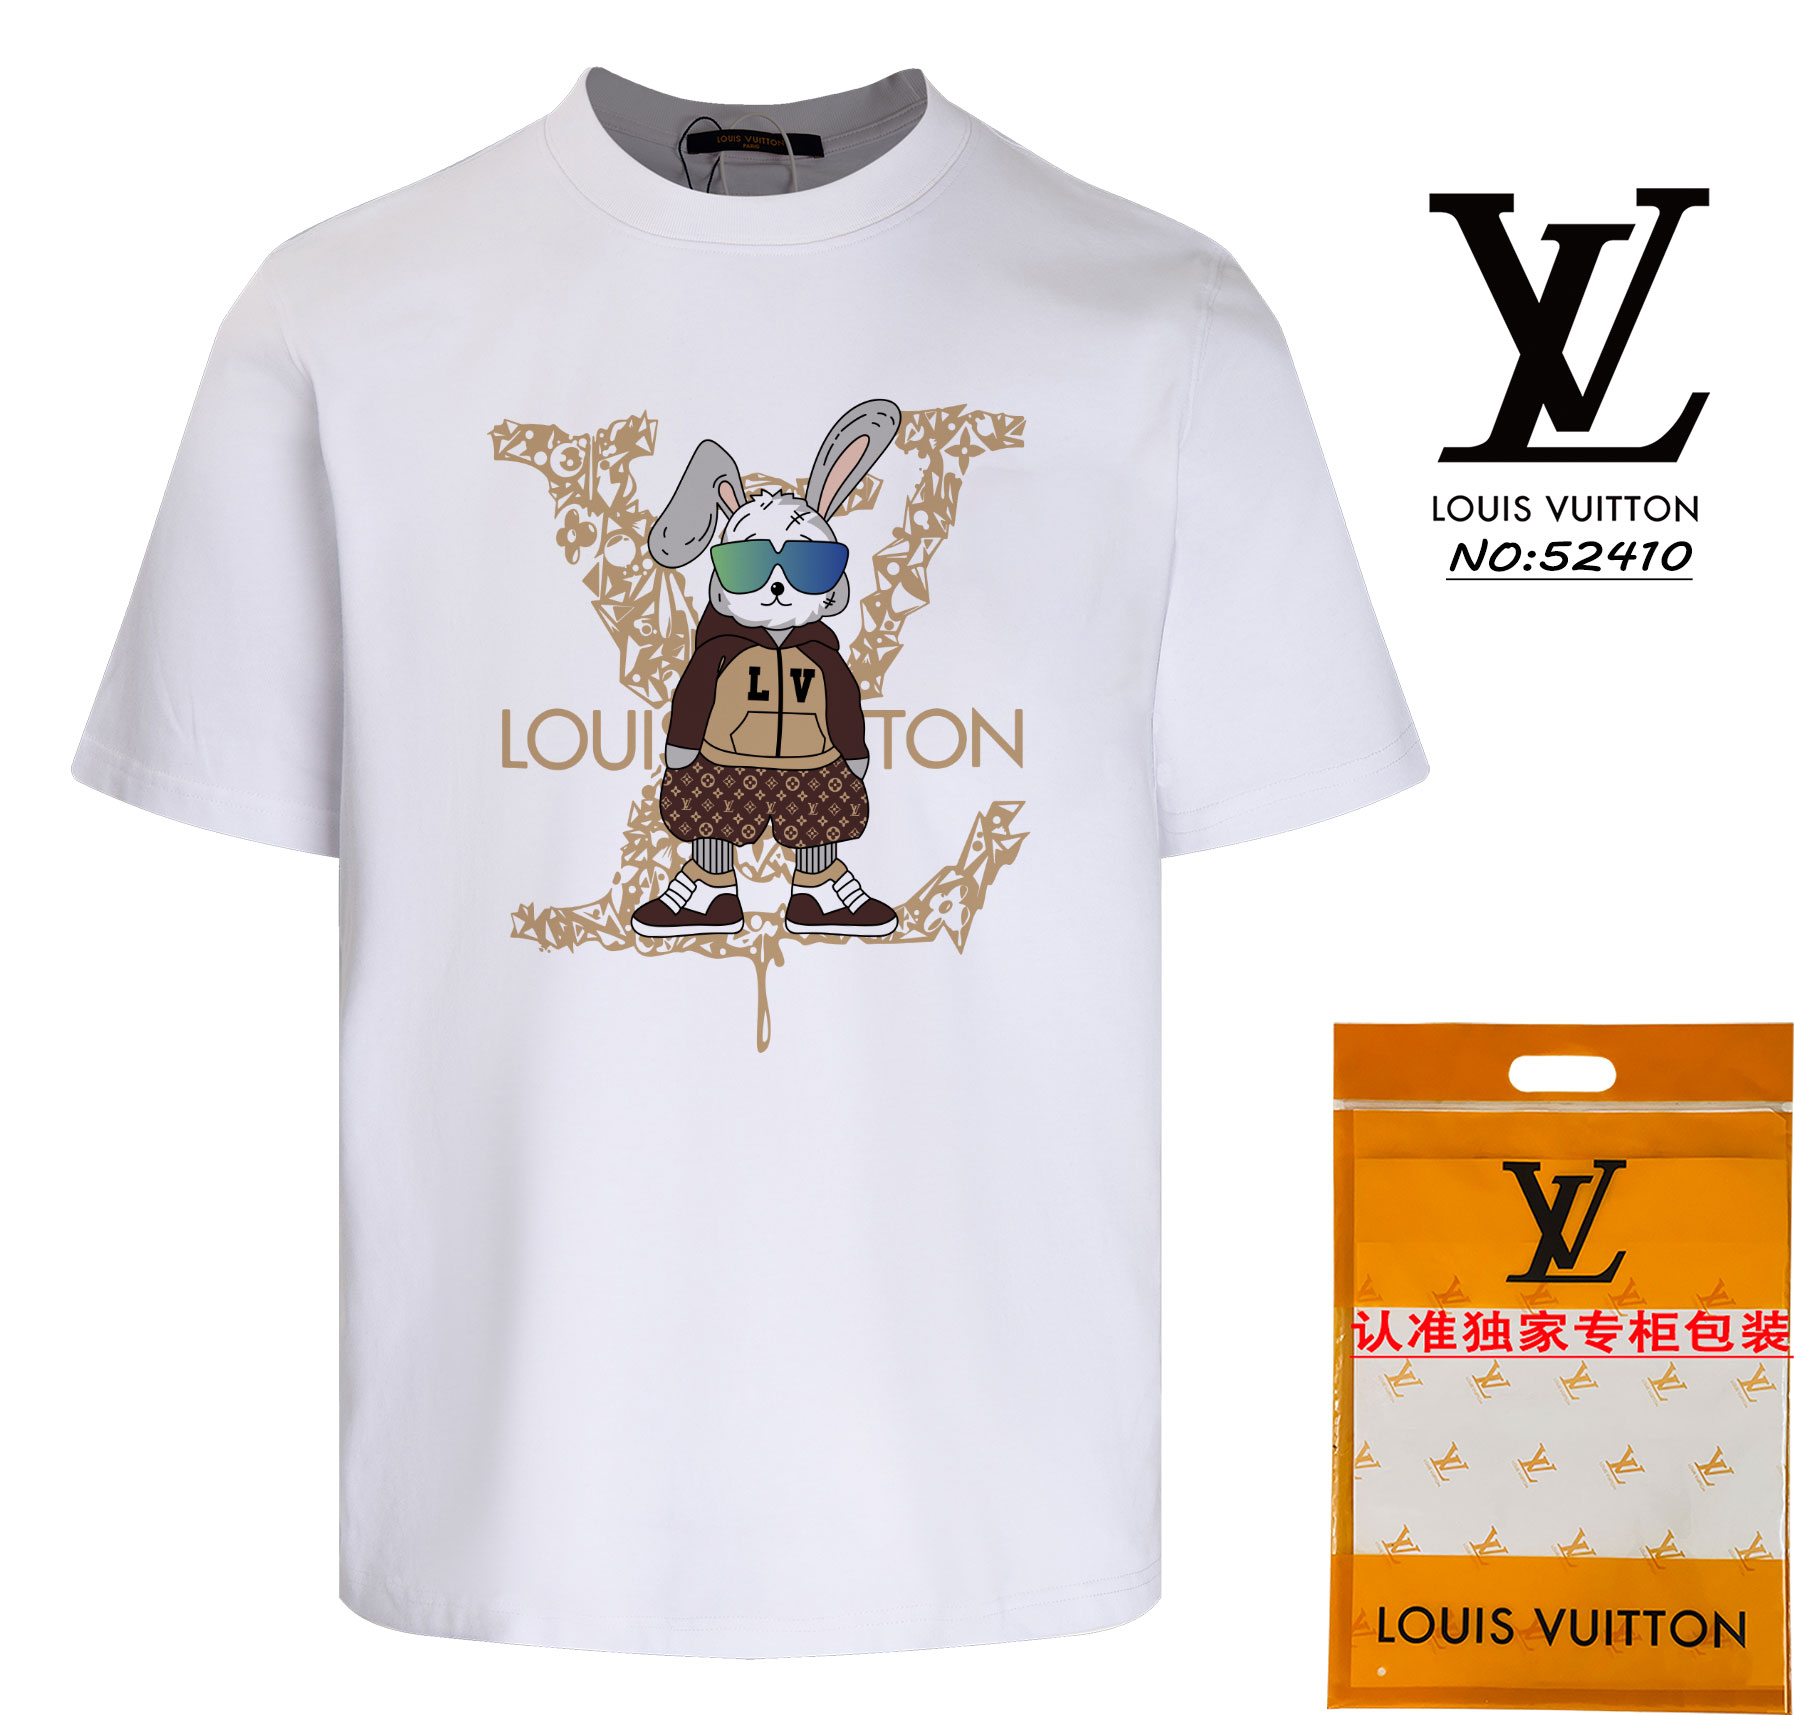 Louis Vuitton Clothing T-Shirt Apricot Color Black White Unisex Short Sleeve